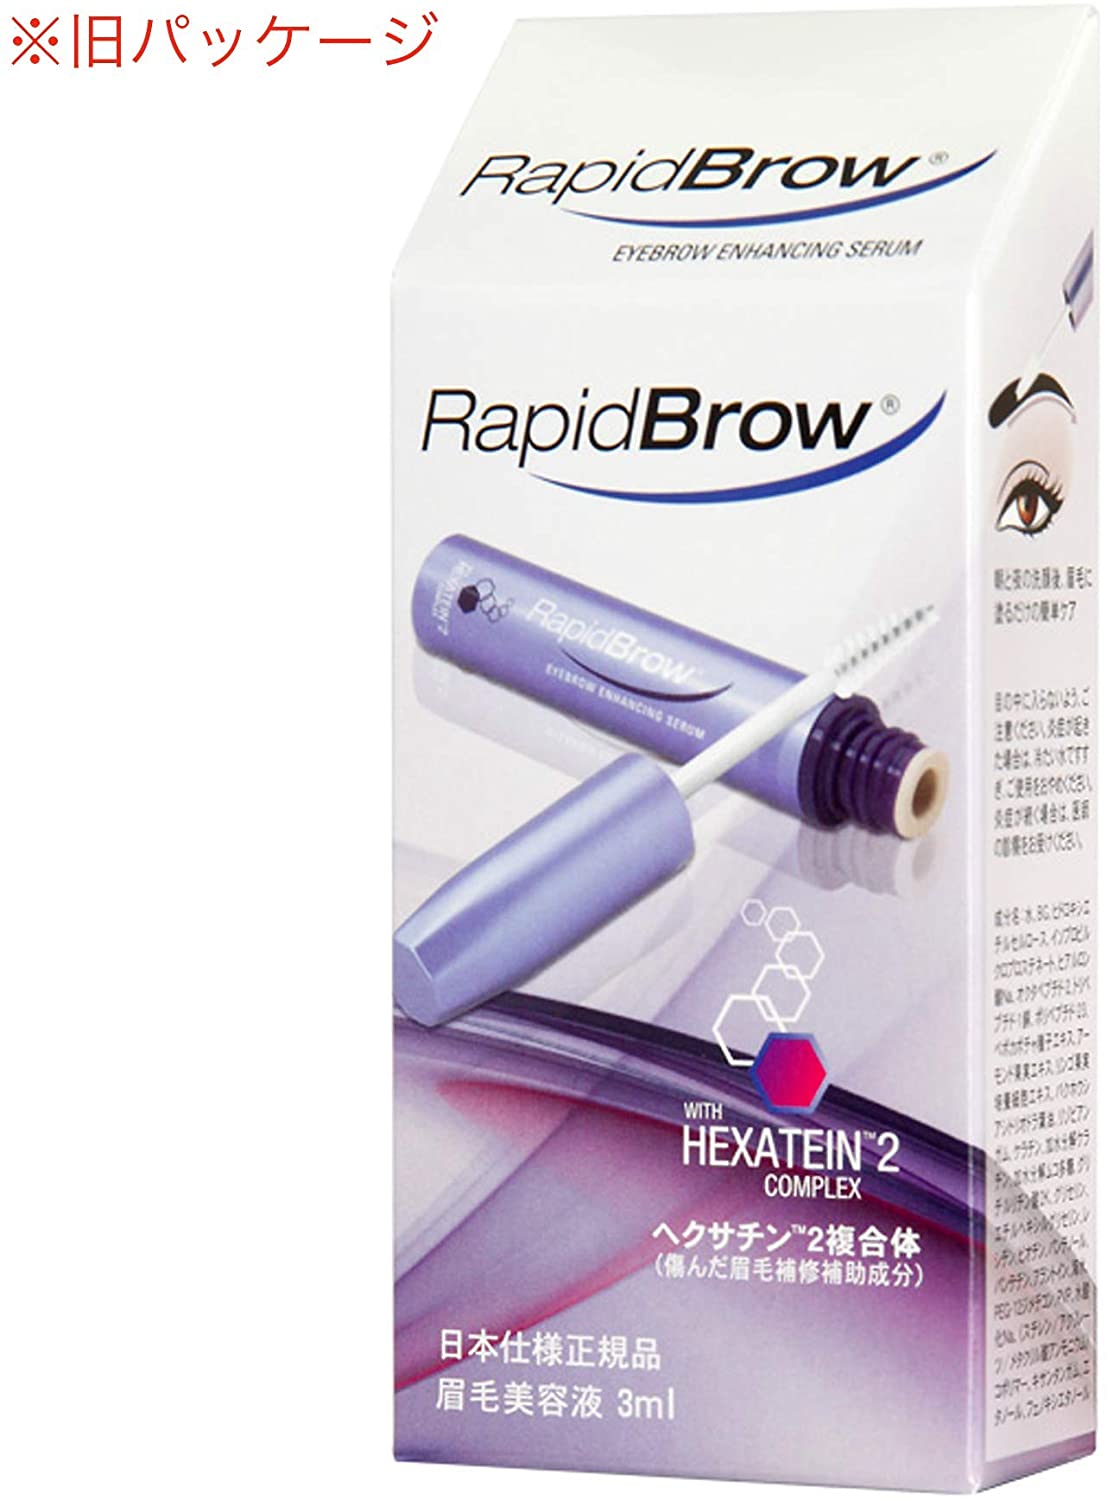 RapidBrow(ラピッドブロウ) ラピッドブロウの商品画像サムネ5 